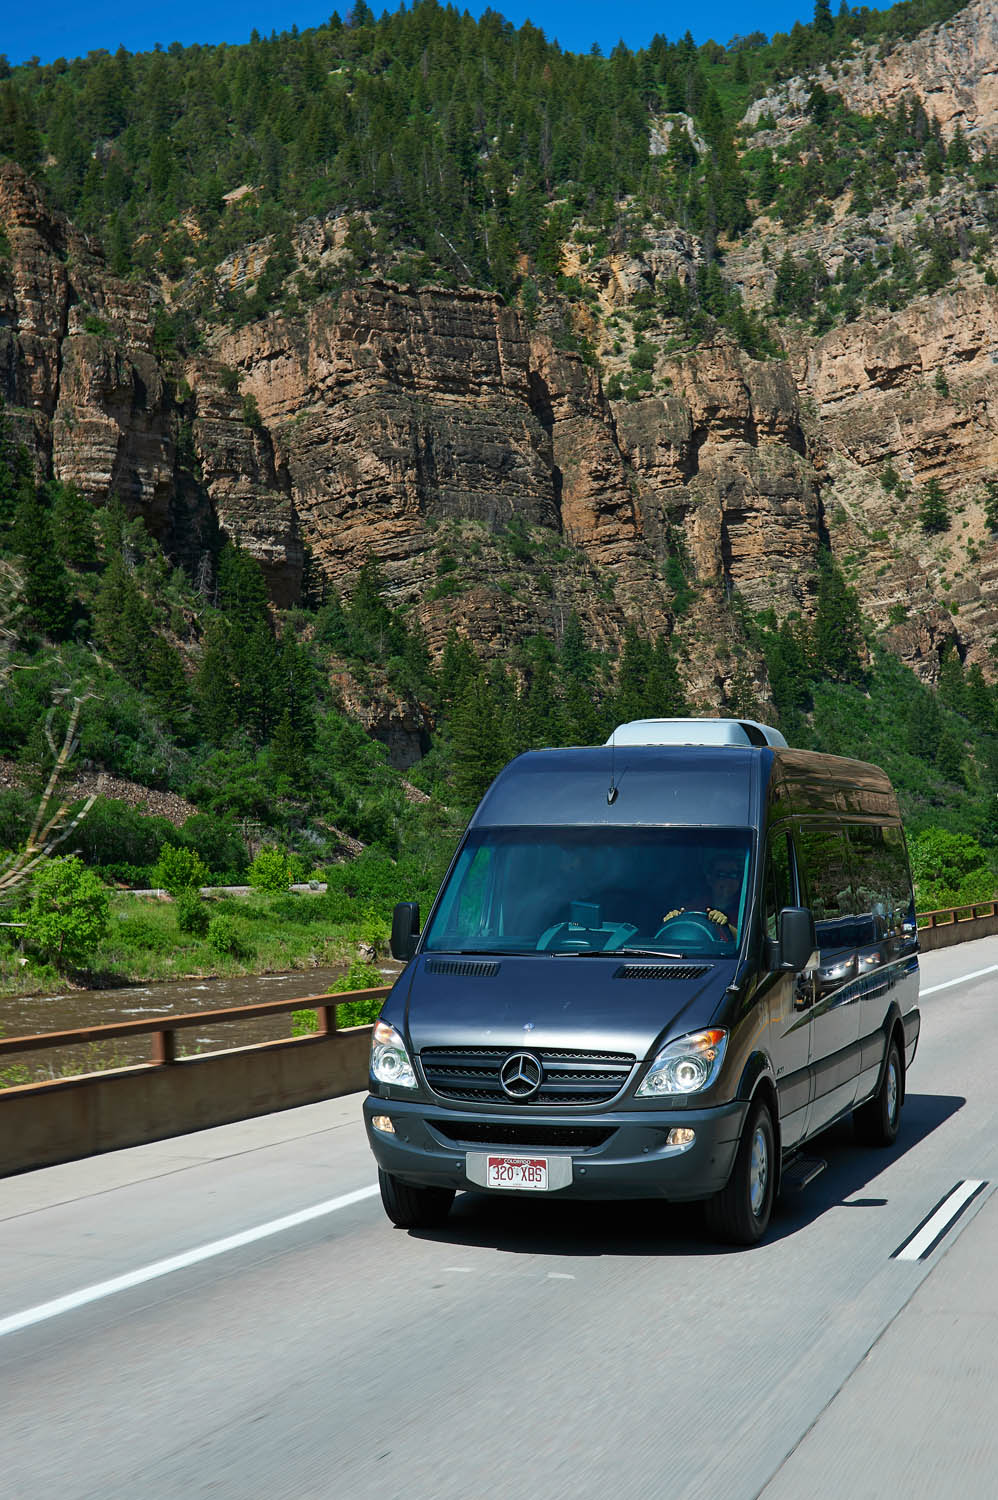  Colorado Mountain Express vehicle in Glenwood Canyon, Colorado. 